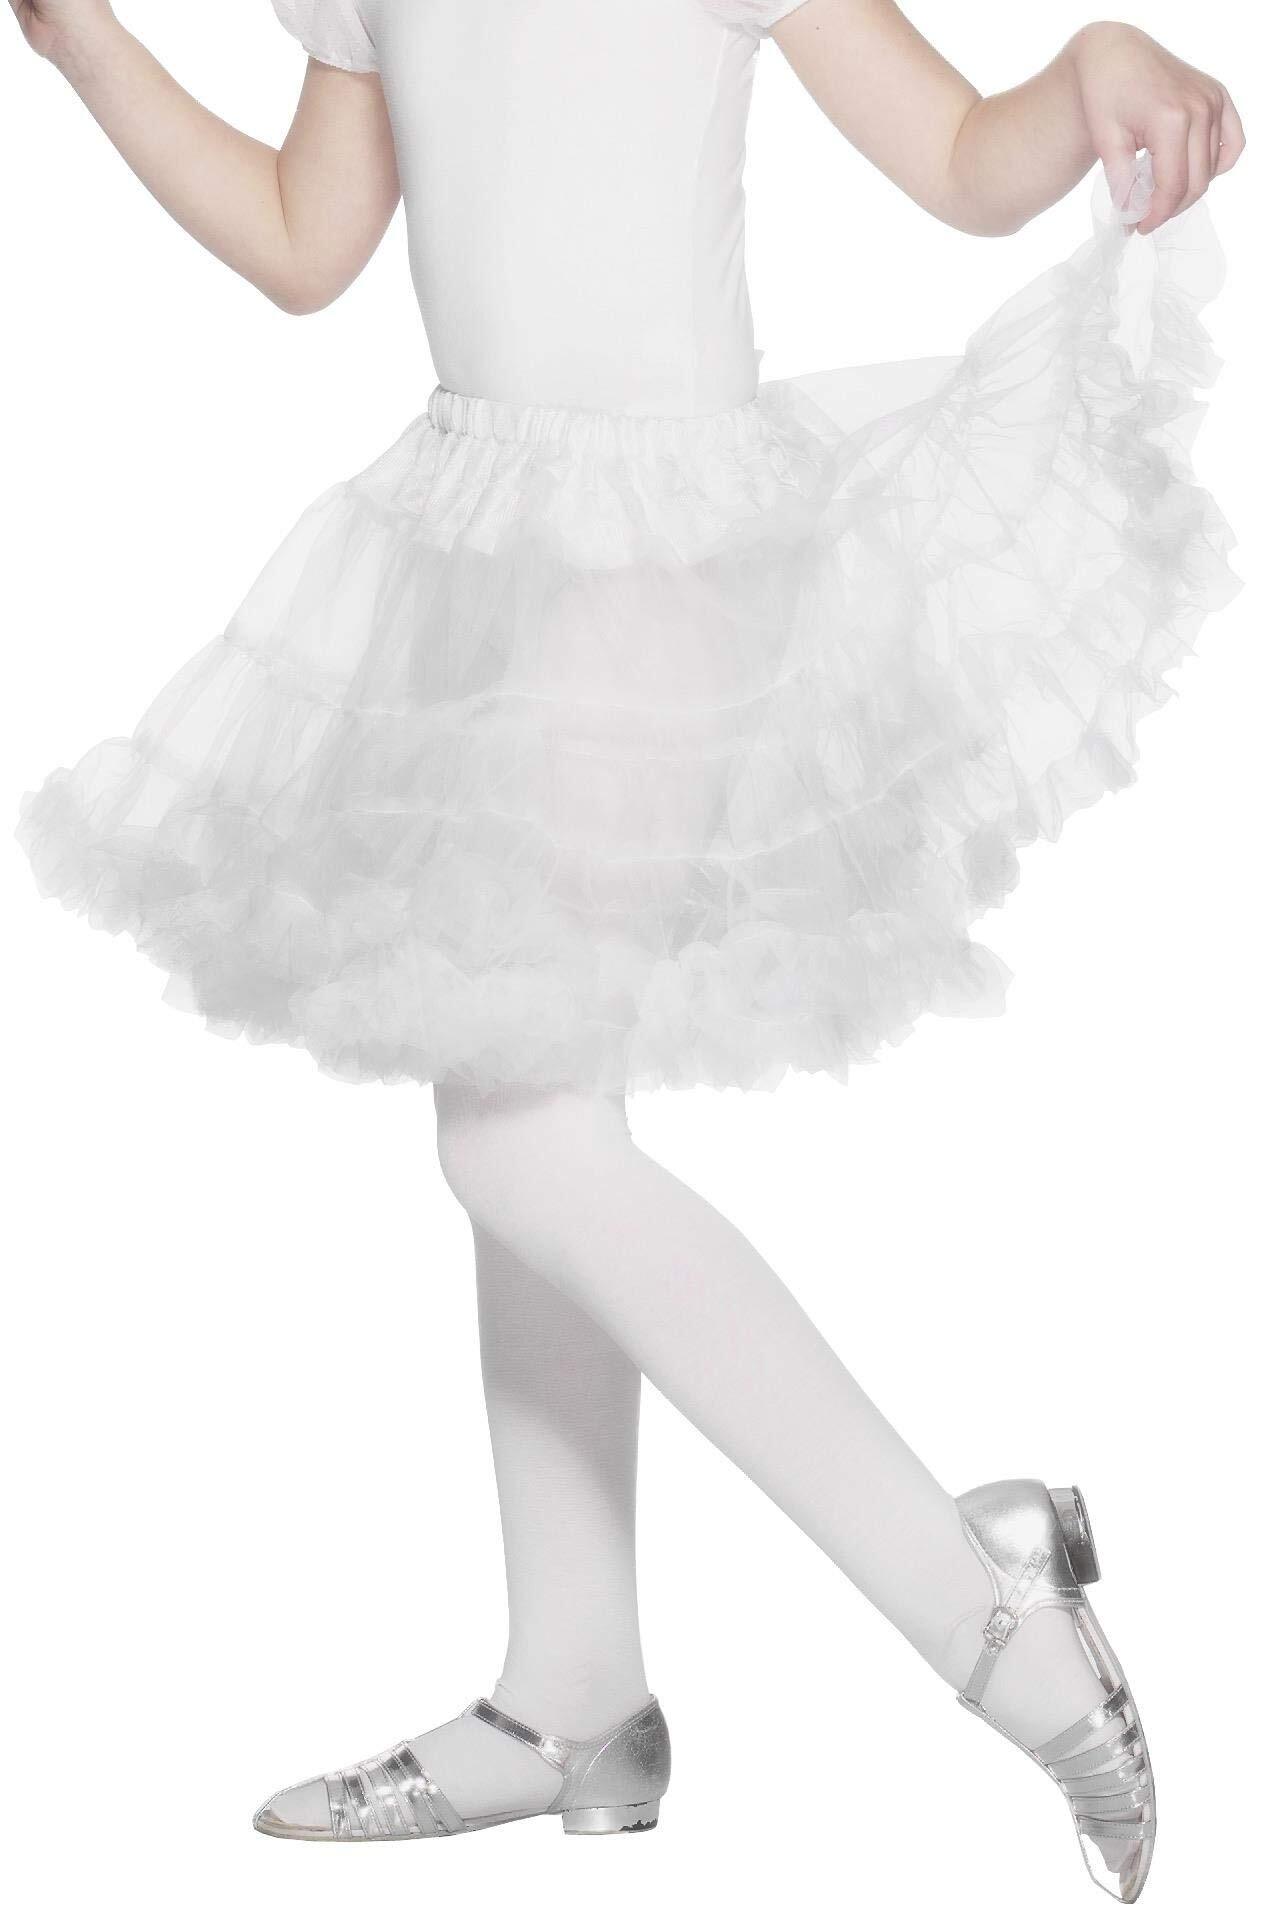 Vegaoo witte petticoat rok onderrok meisjeskostuum wit